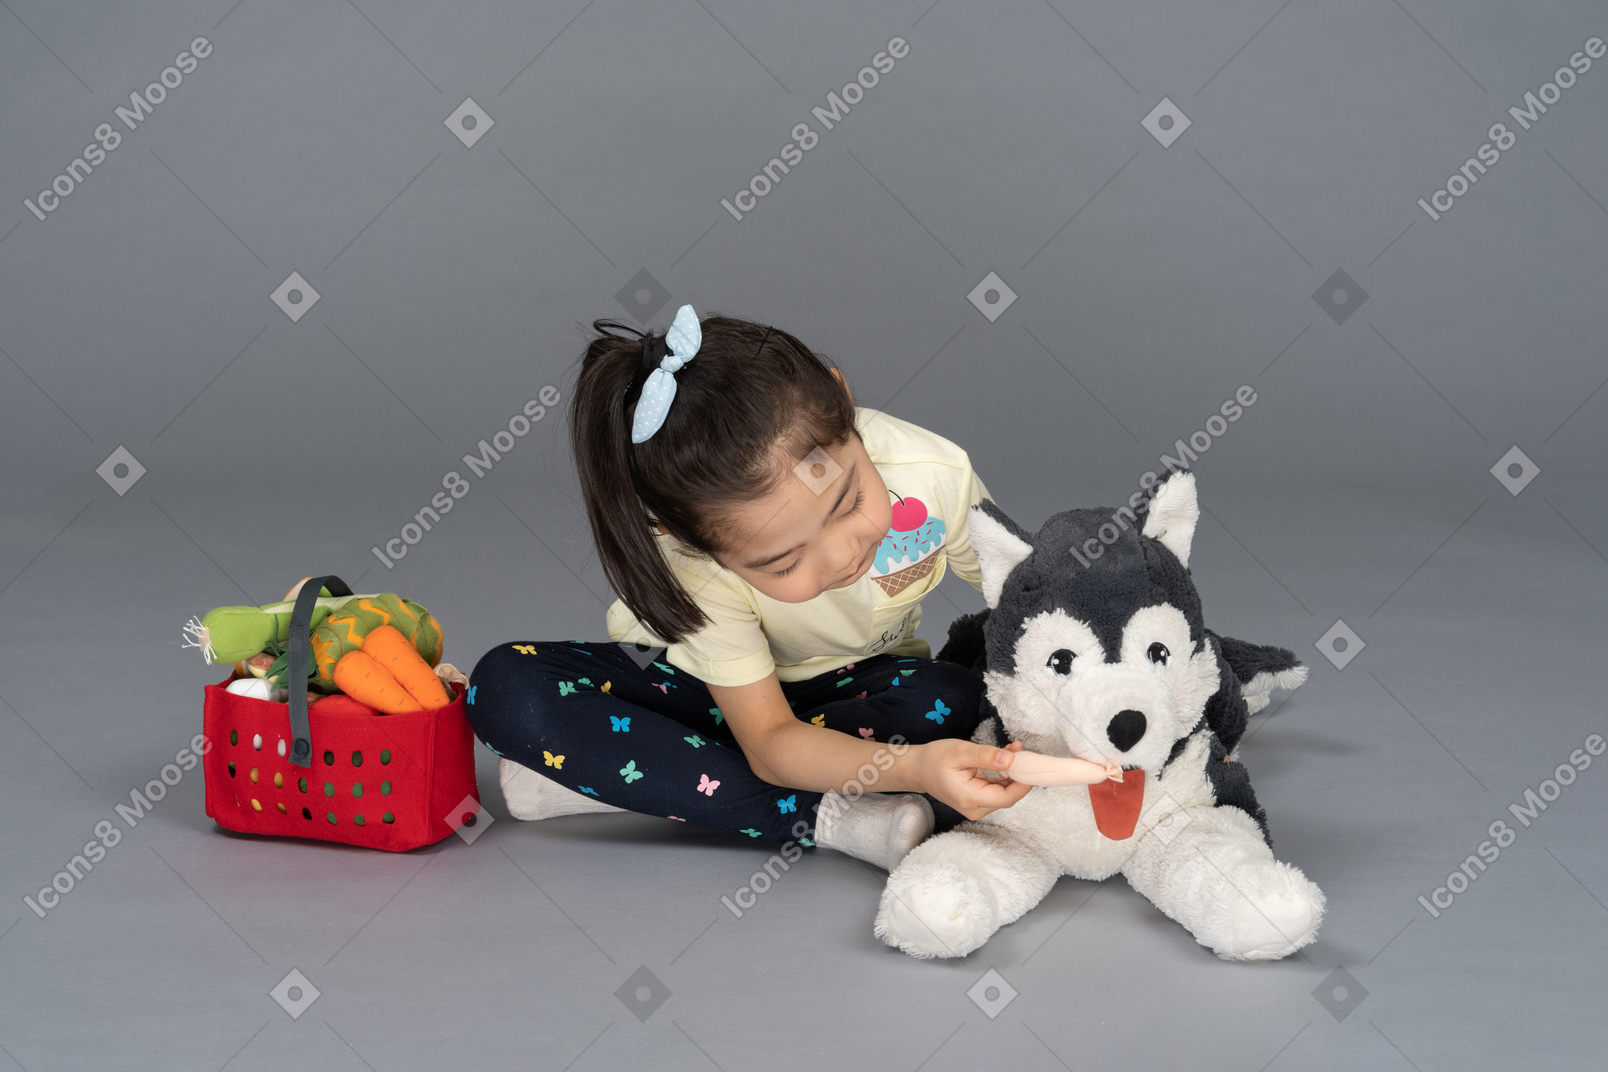 Portrait of a little girl feeding a dog plushie